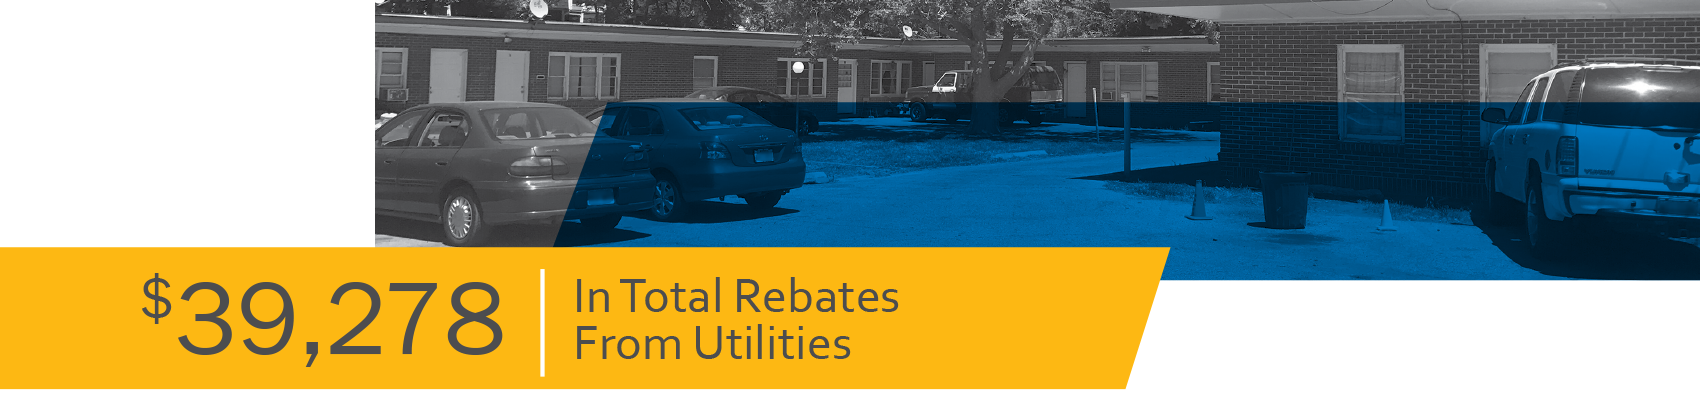 $39,278 In Total Rebates From Utilities